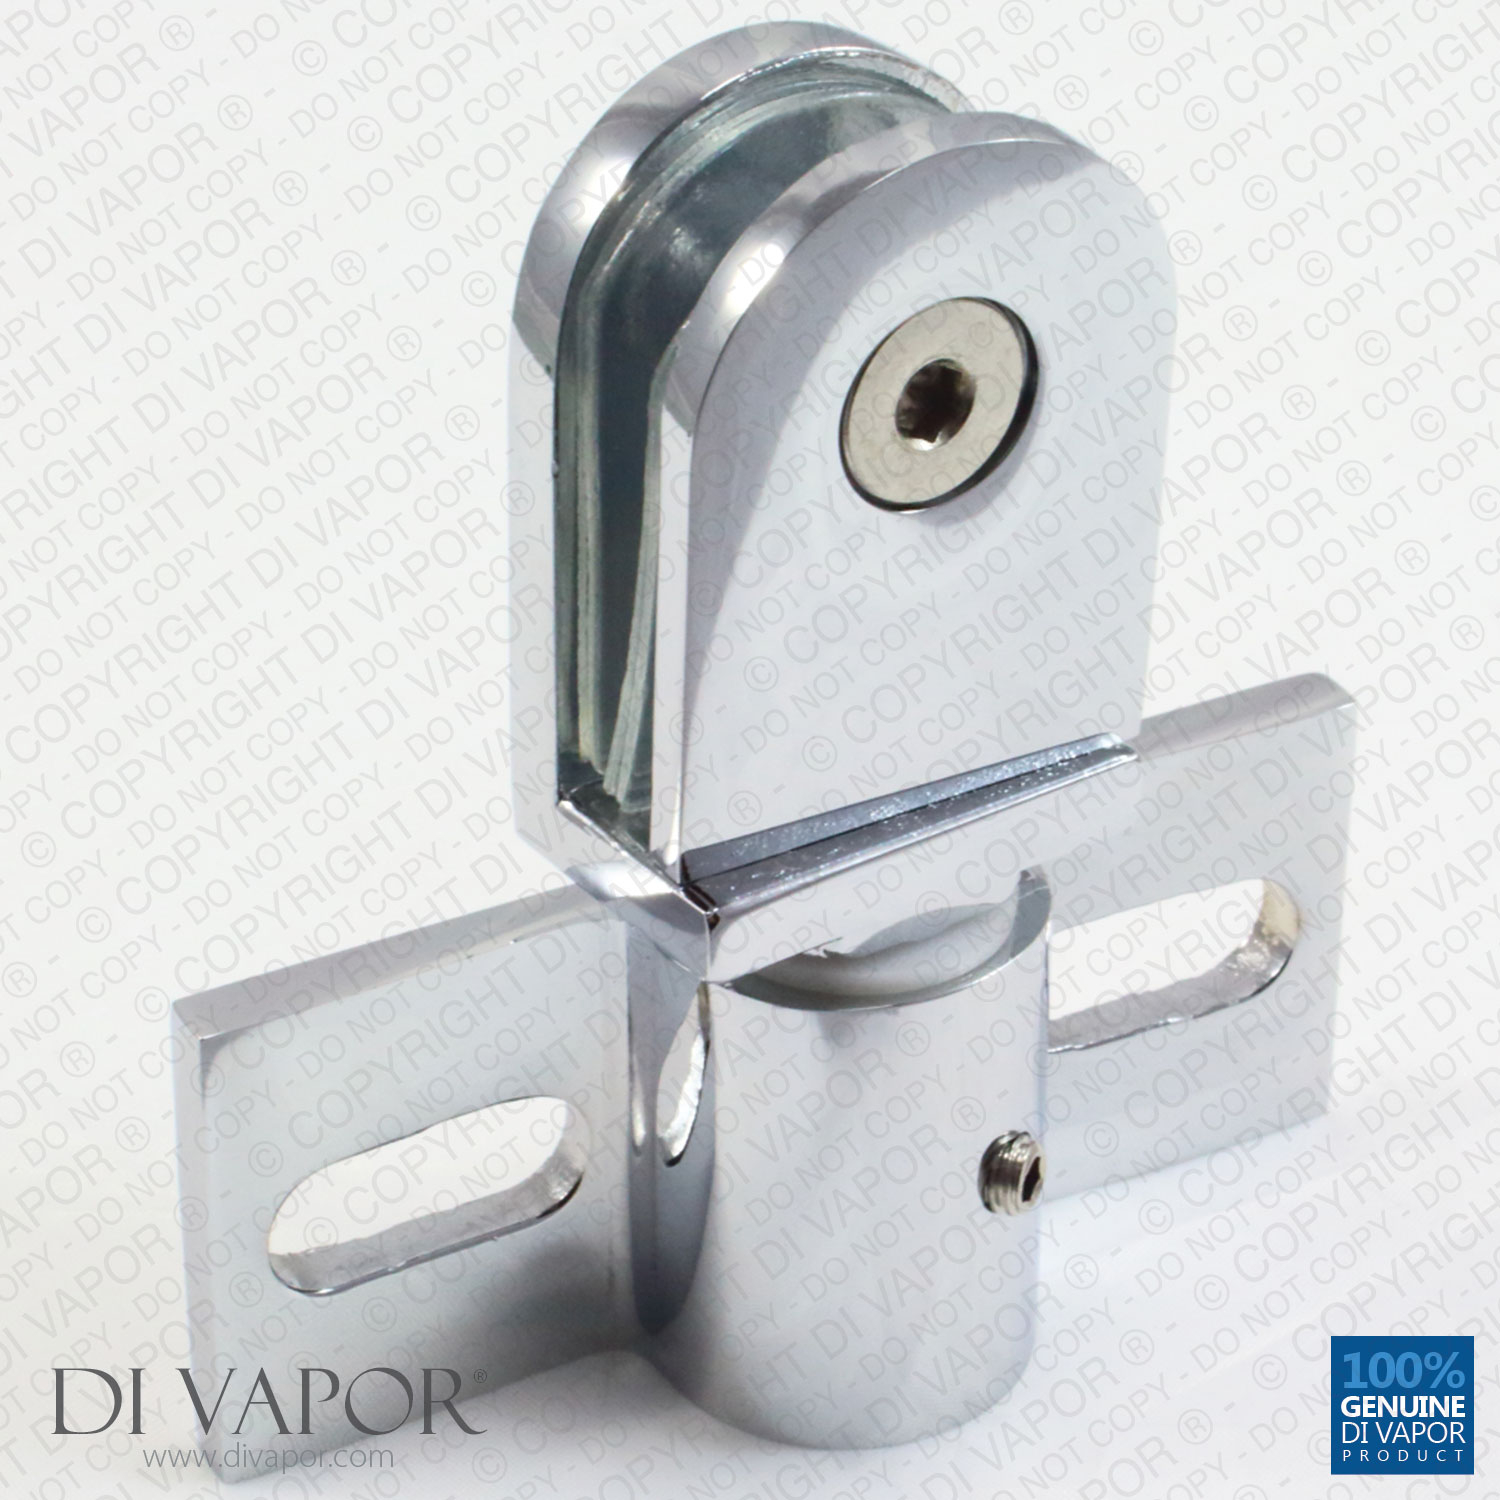 Di Vapor R Glass Shower Door Pivot Hinge Frameless Brackets throughout proportions 1500 X 1500